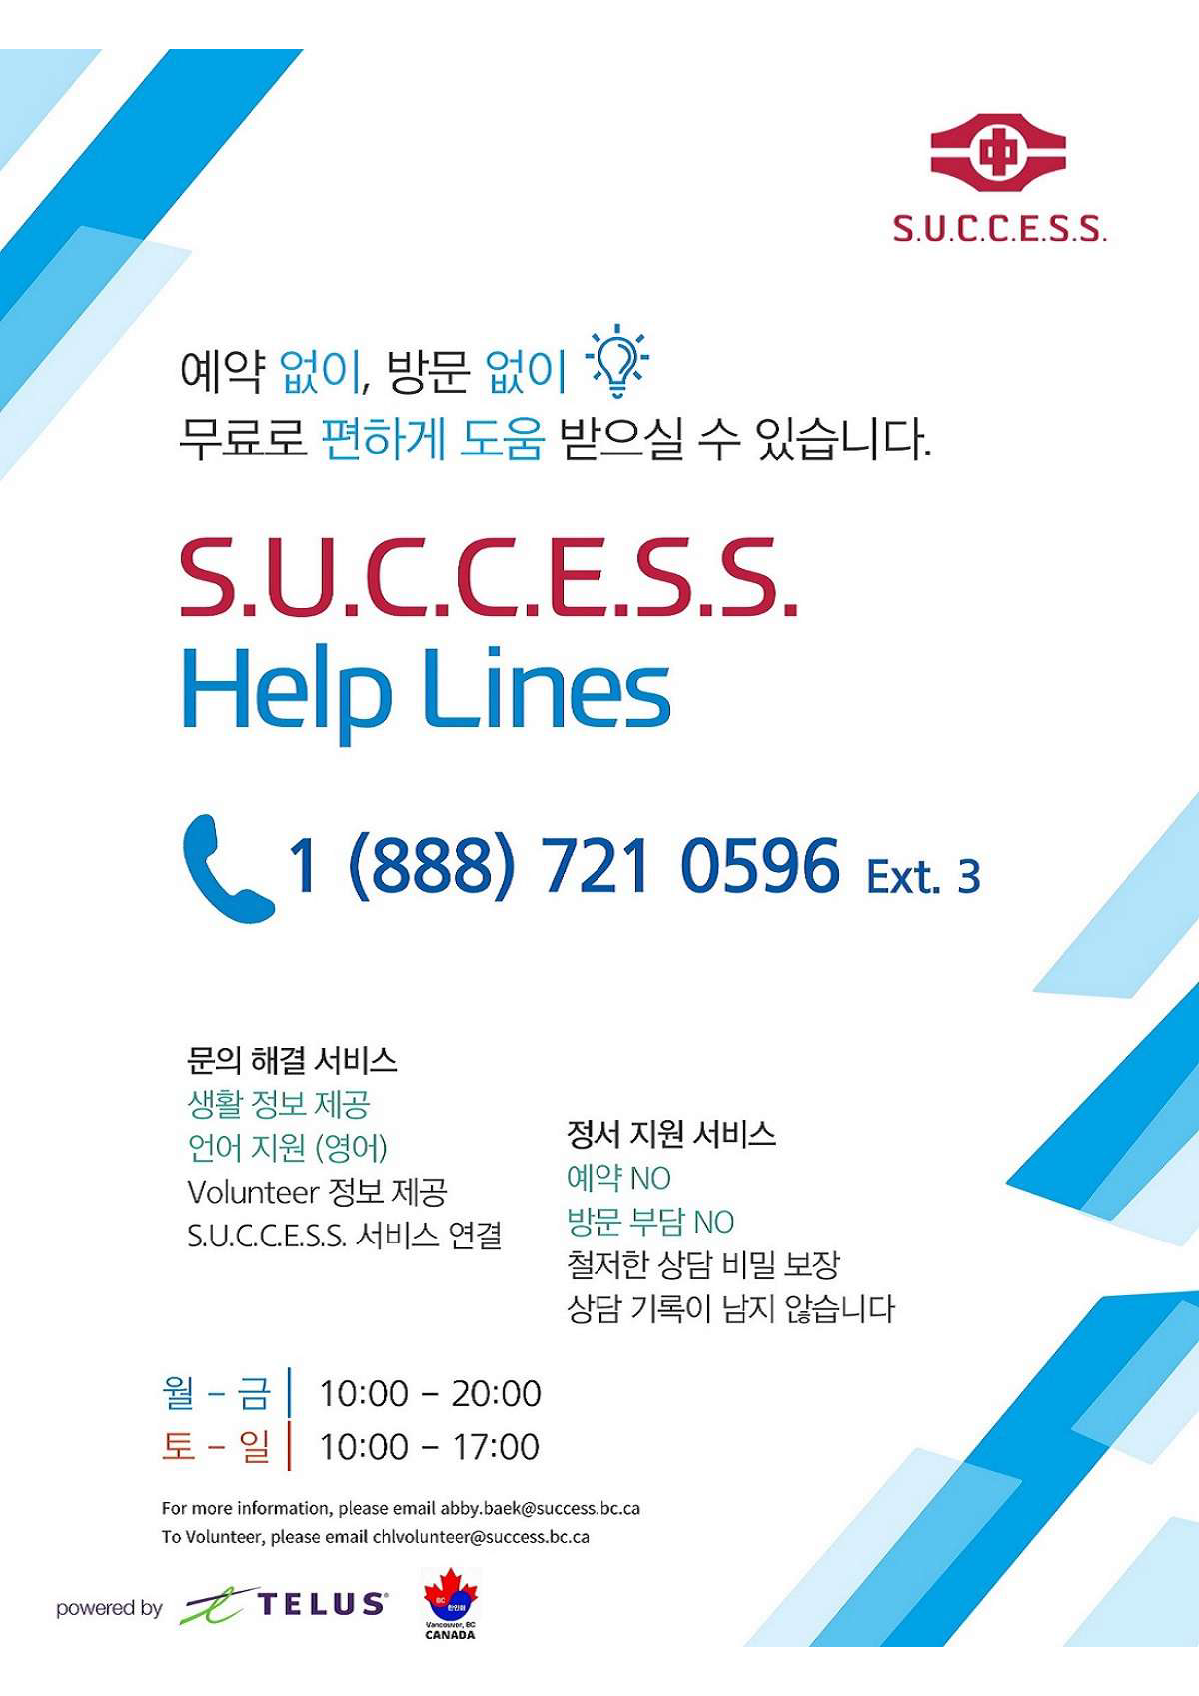 Helpline Services  S.U.C.C.E.S.S.  5 languages_Page_3.png